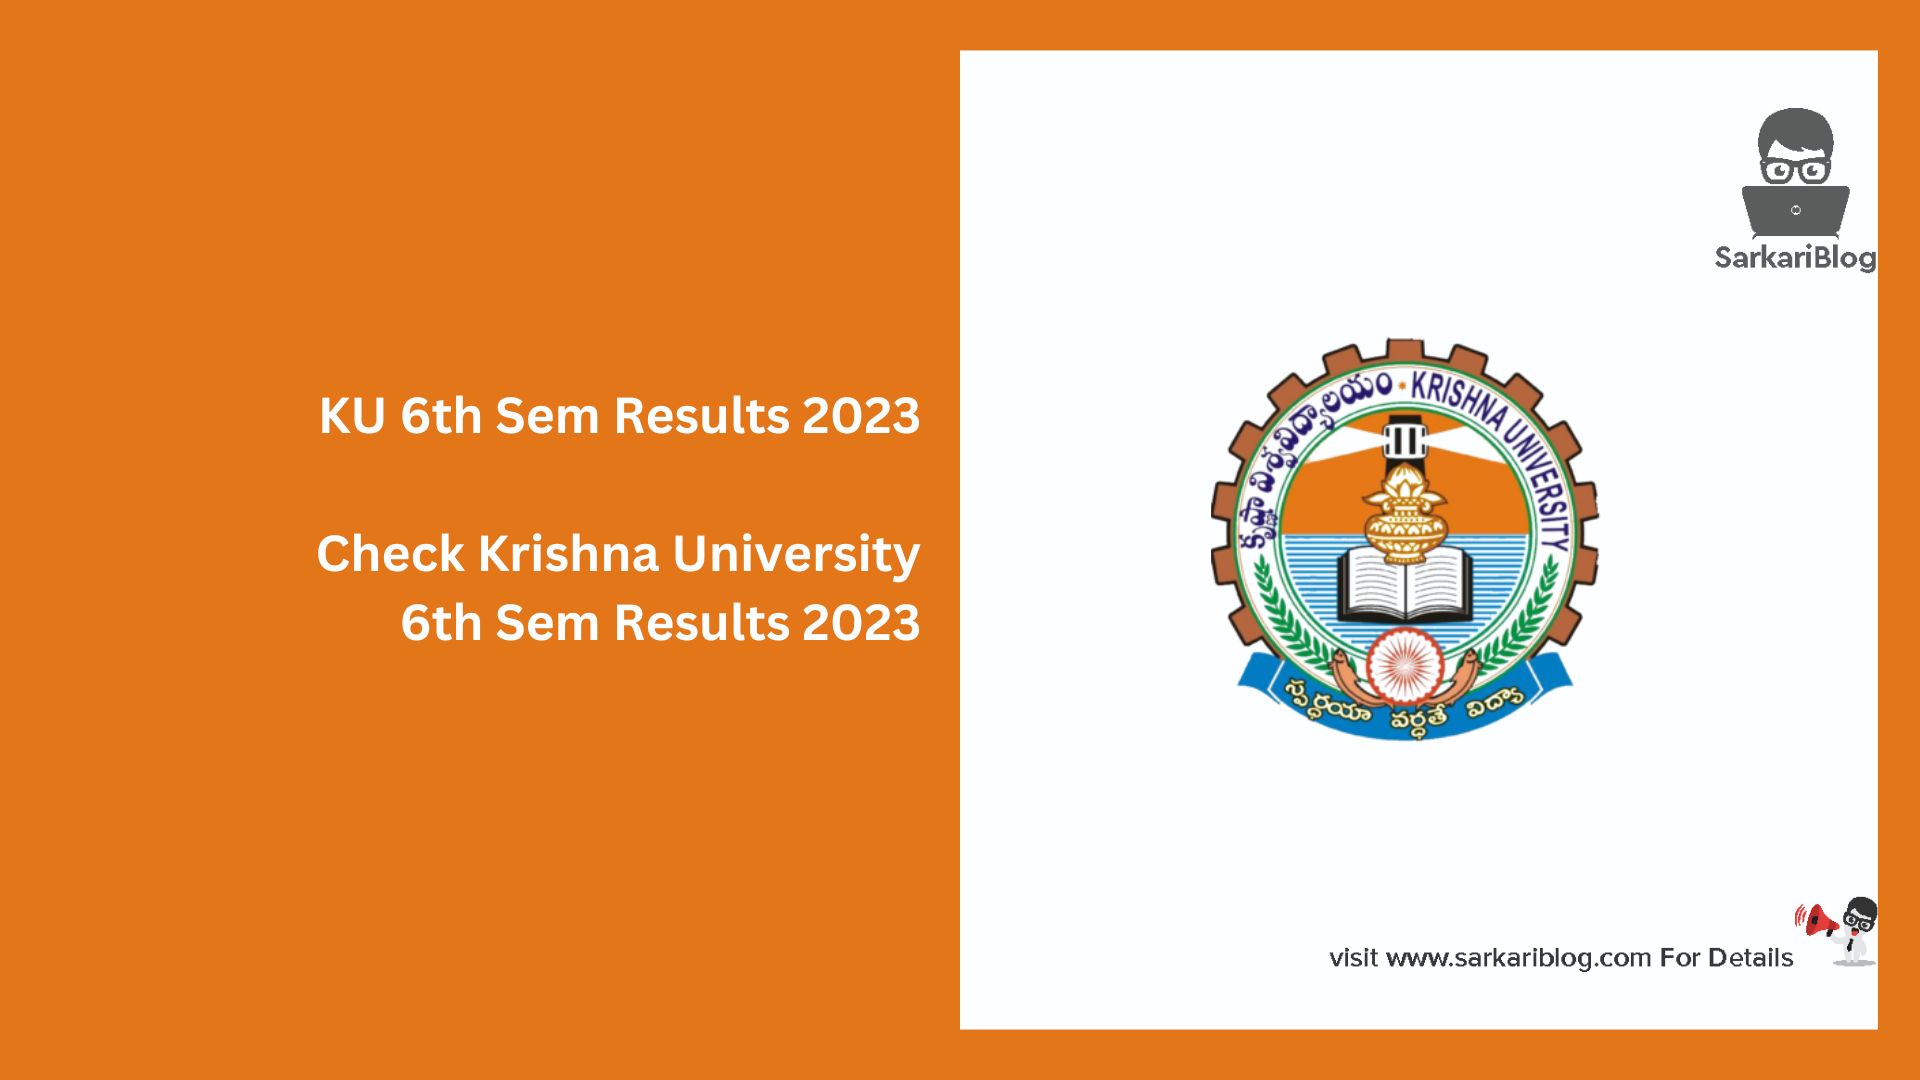 KU 6th Sem Results 2023